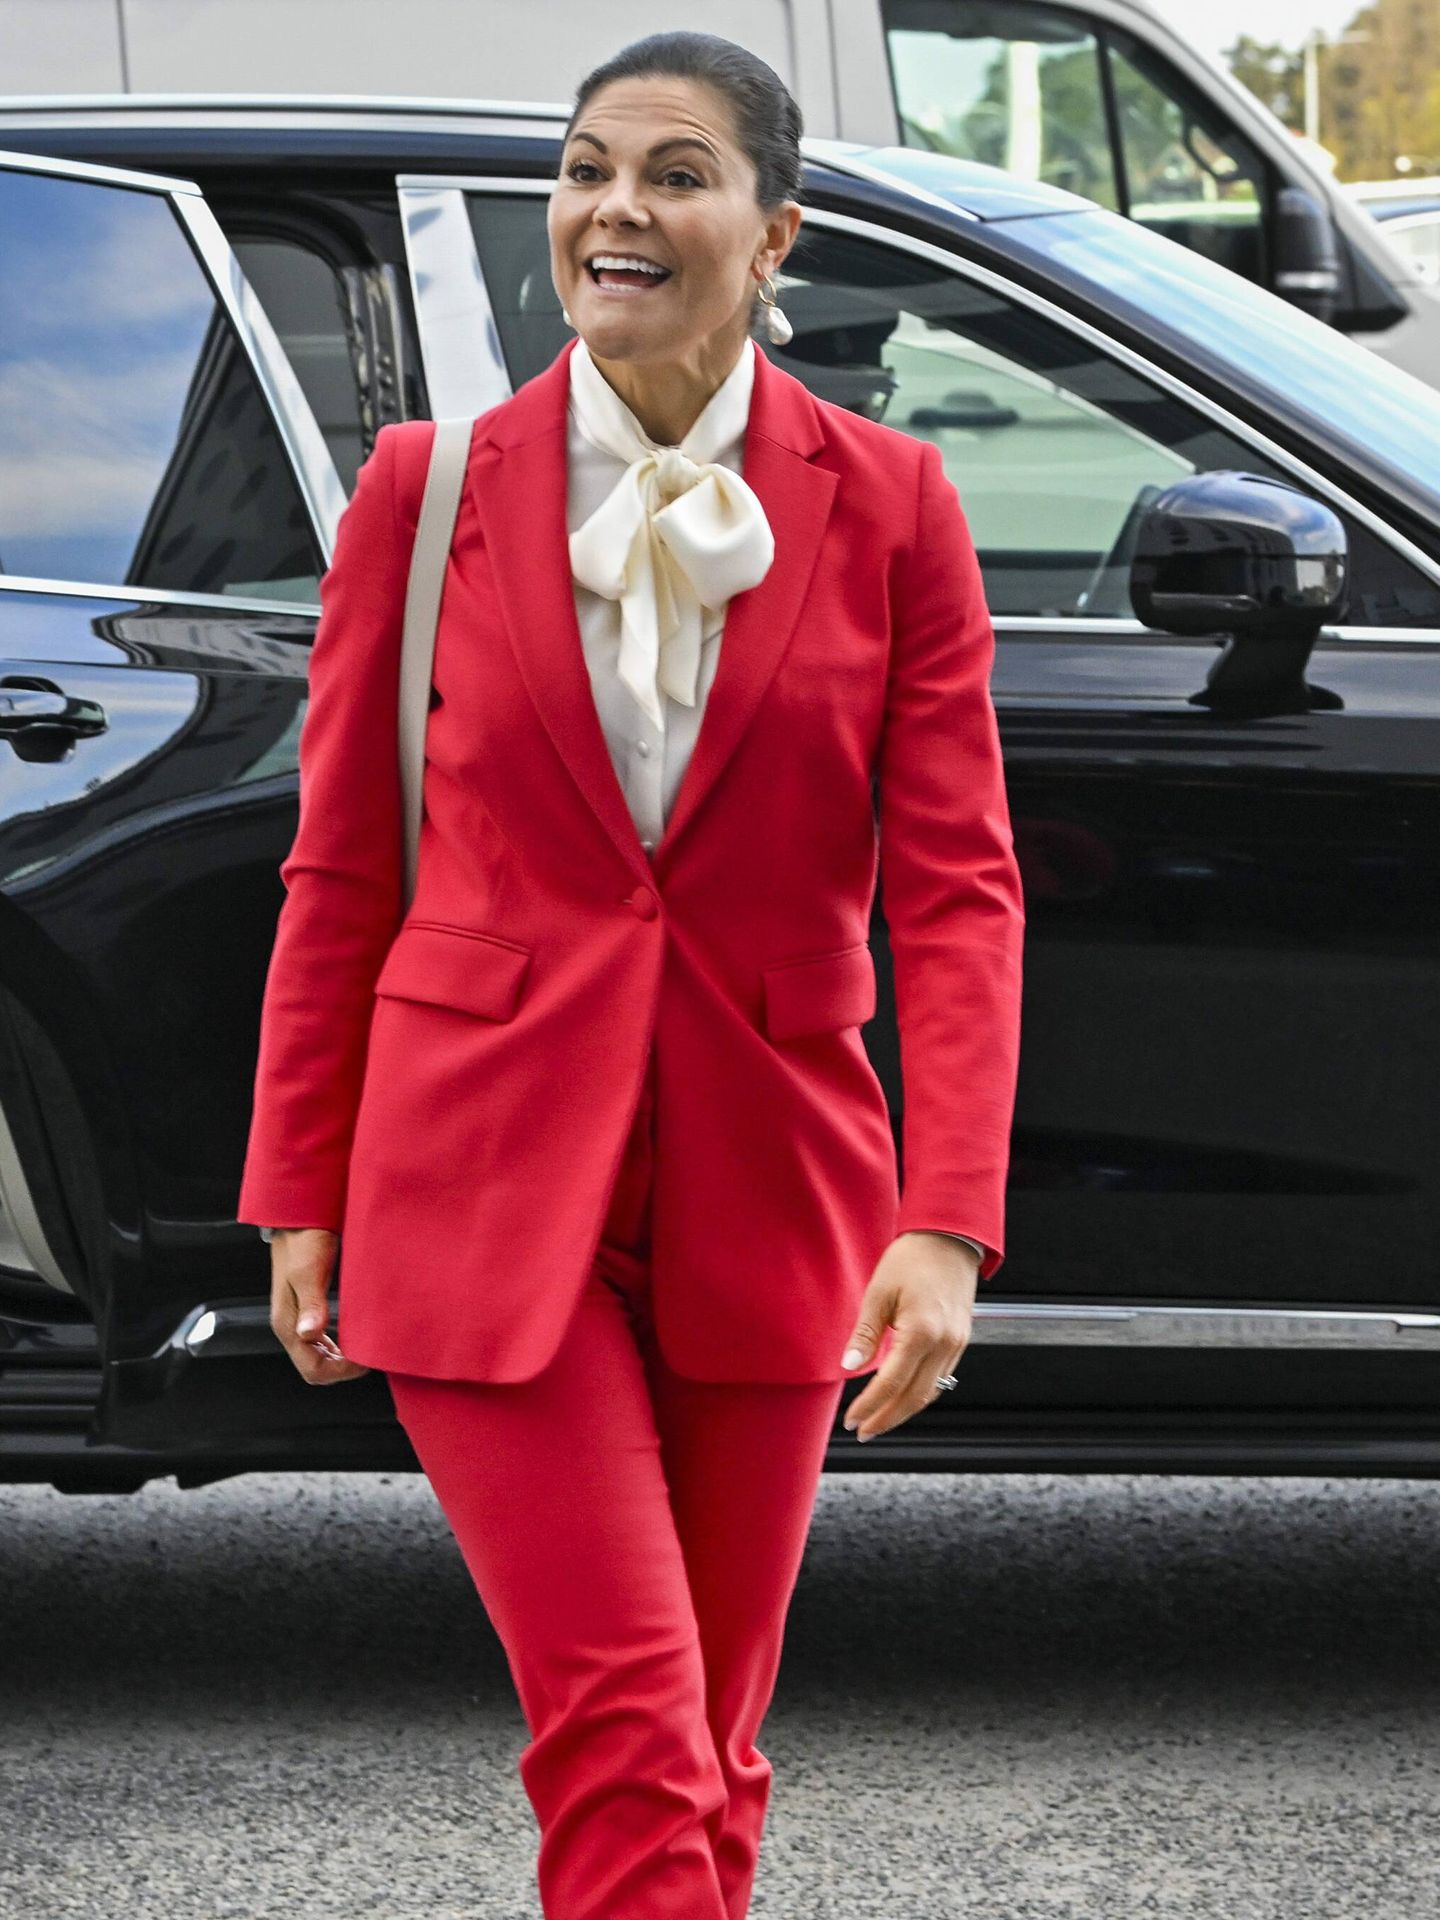 Victoria de Suecia triunfa con un traje rojo y blusa blanca. (Cordon Press)